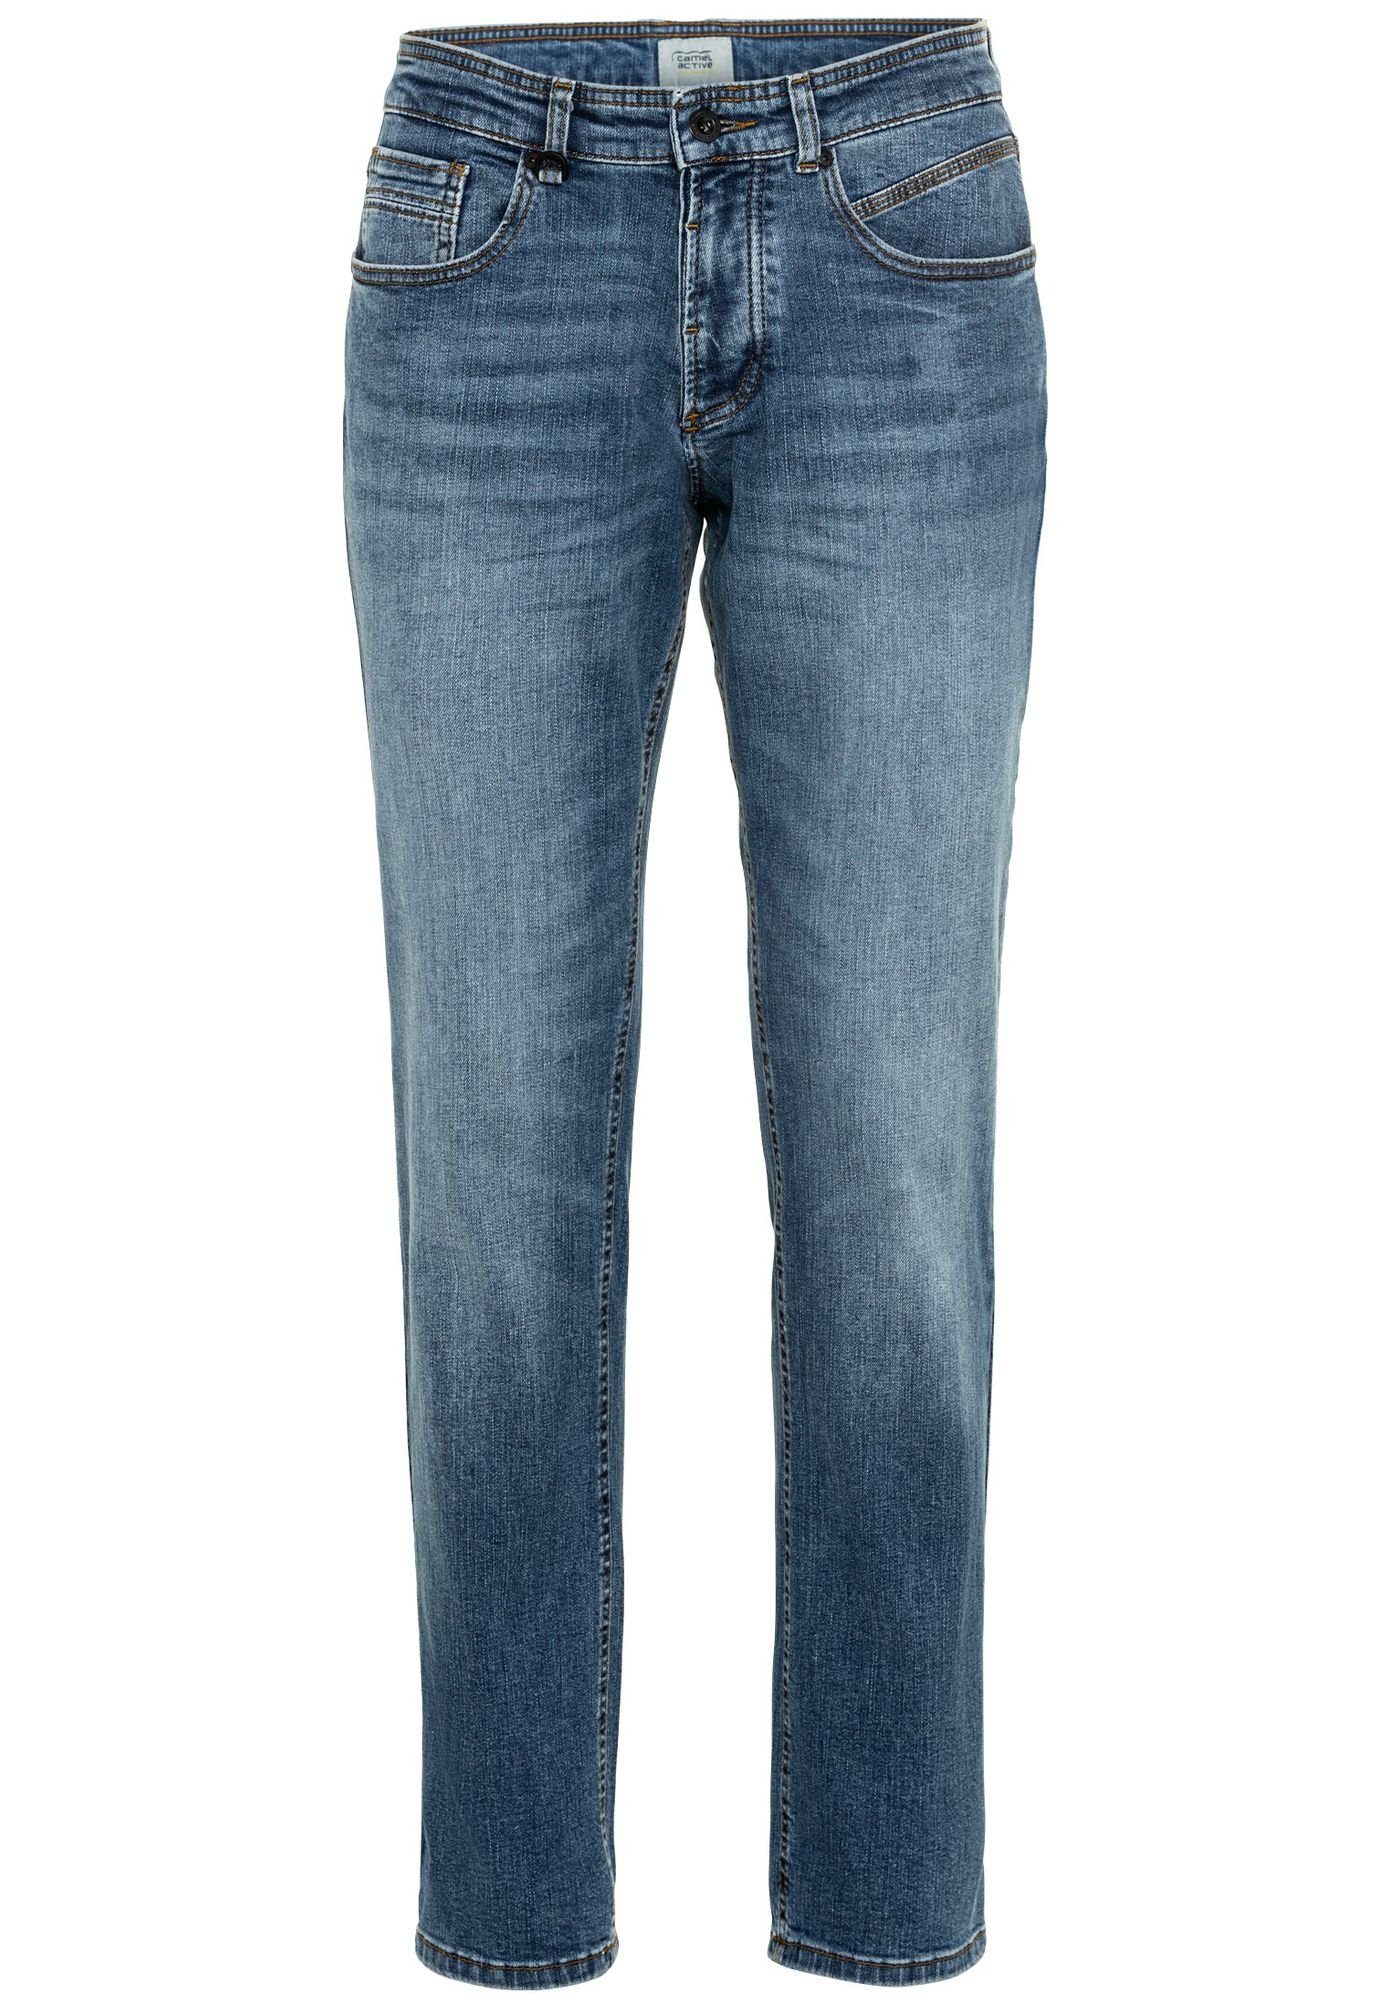 camel active 5-Pocket-Jeans »488895-9D19« gerades Bein, normale Leibhöhe  online kaufen | OTTO